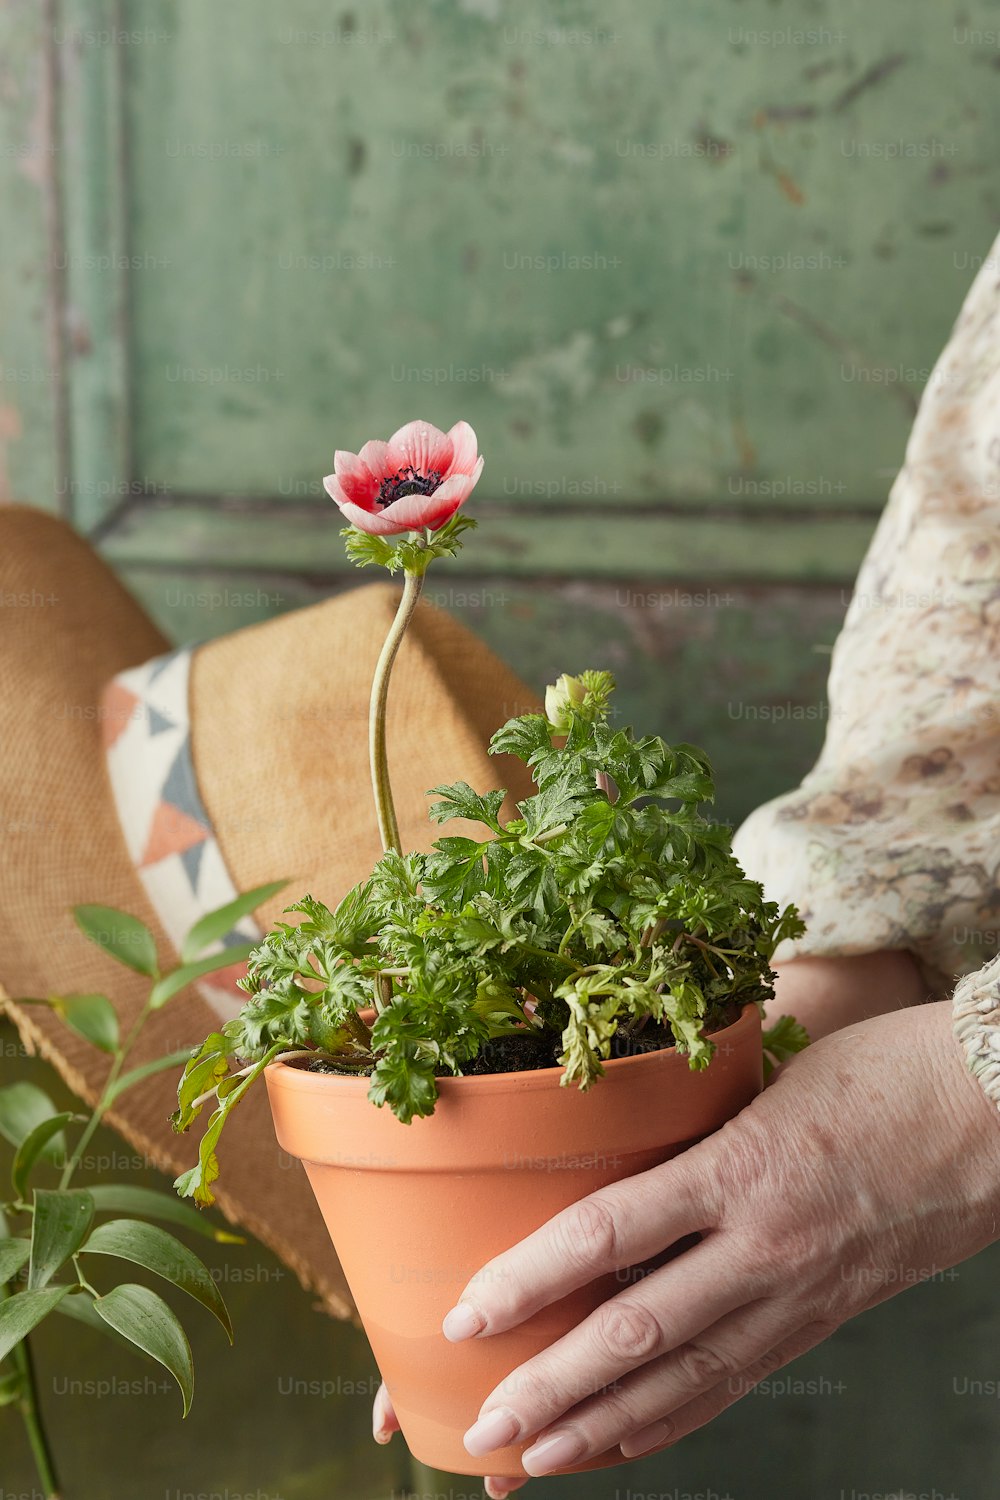 uma pessoa segurando um vaso de planta com uma flor nele